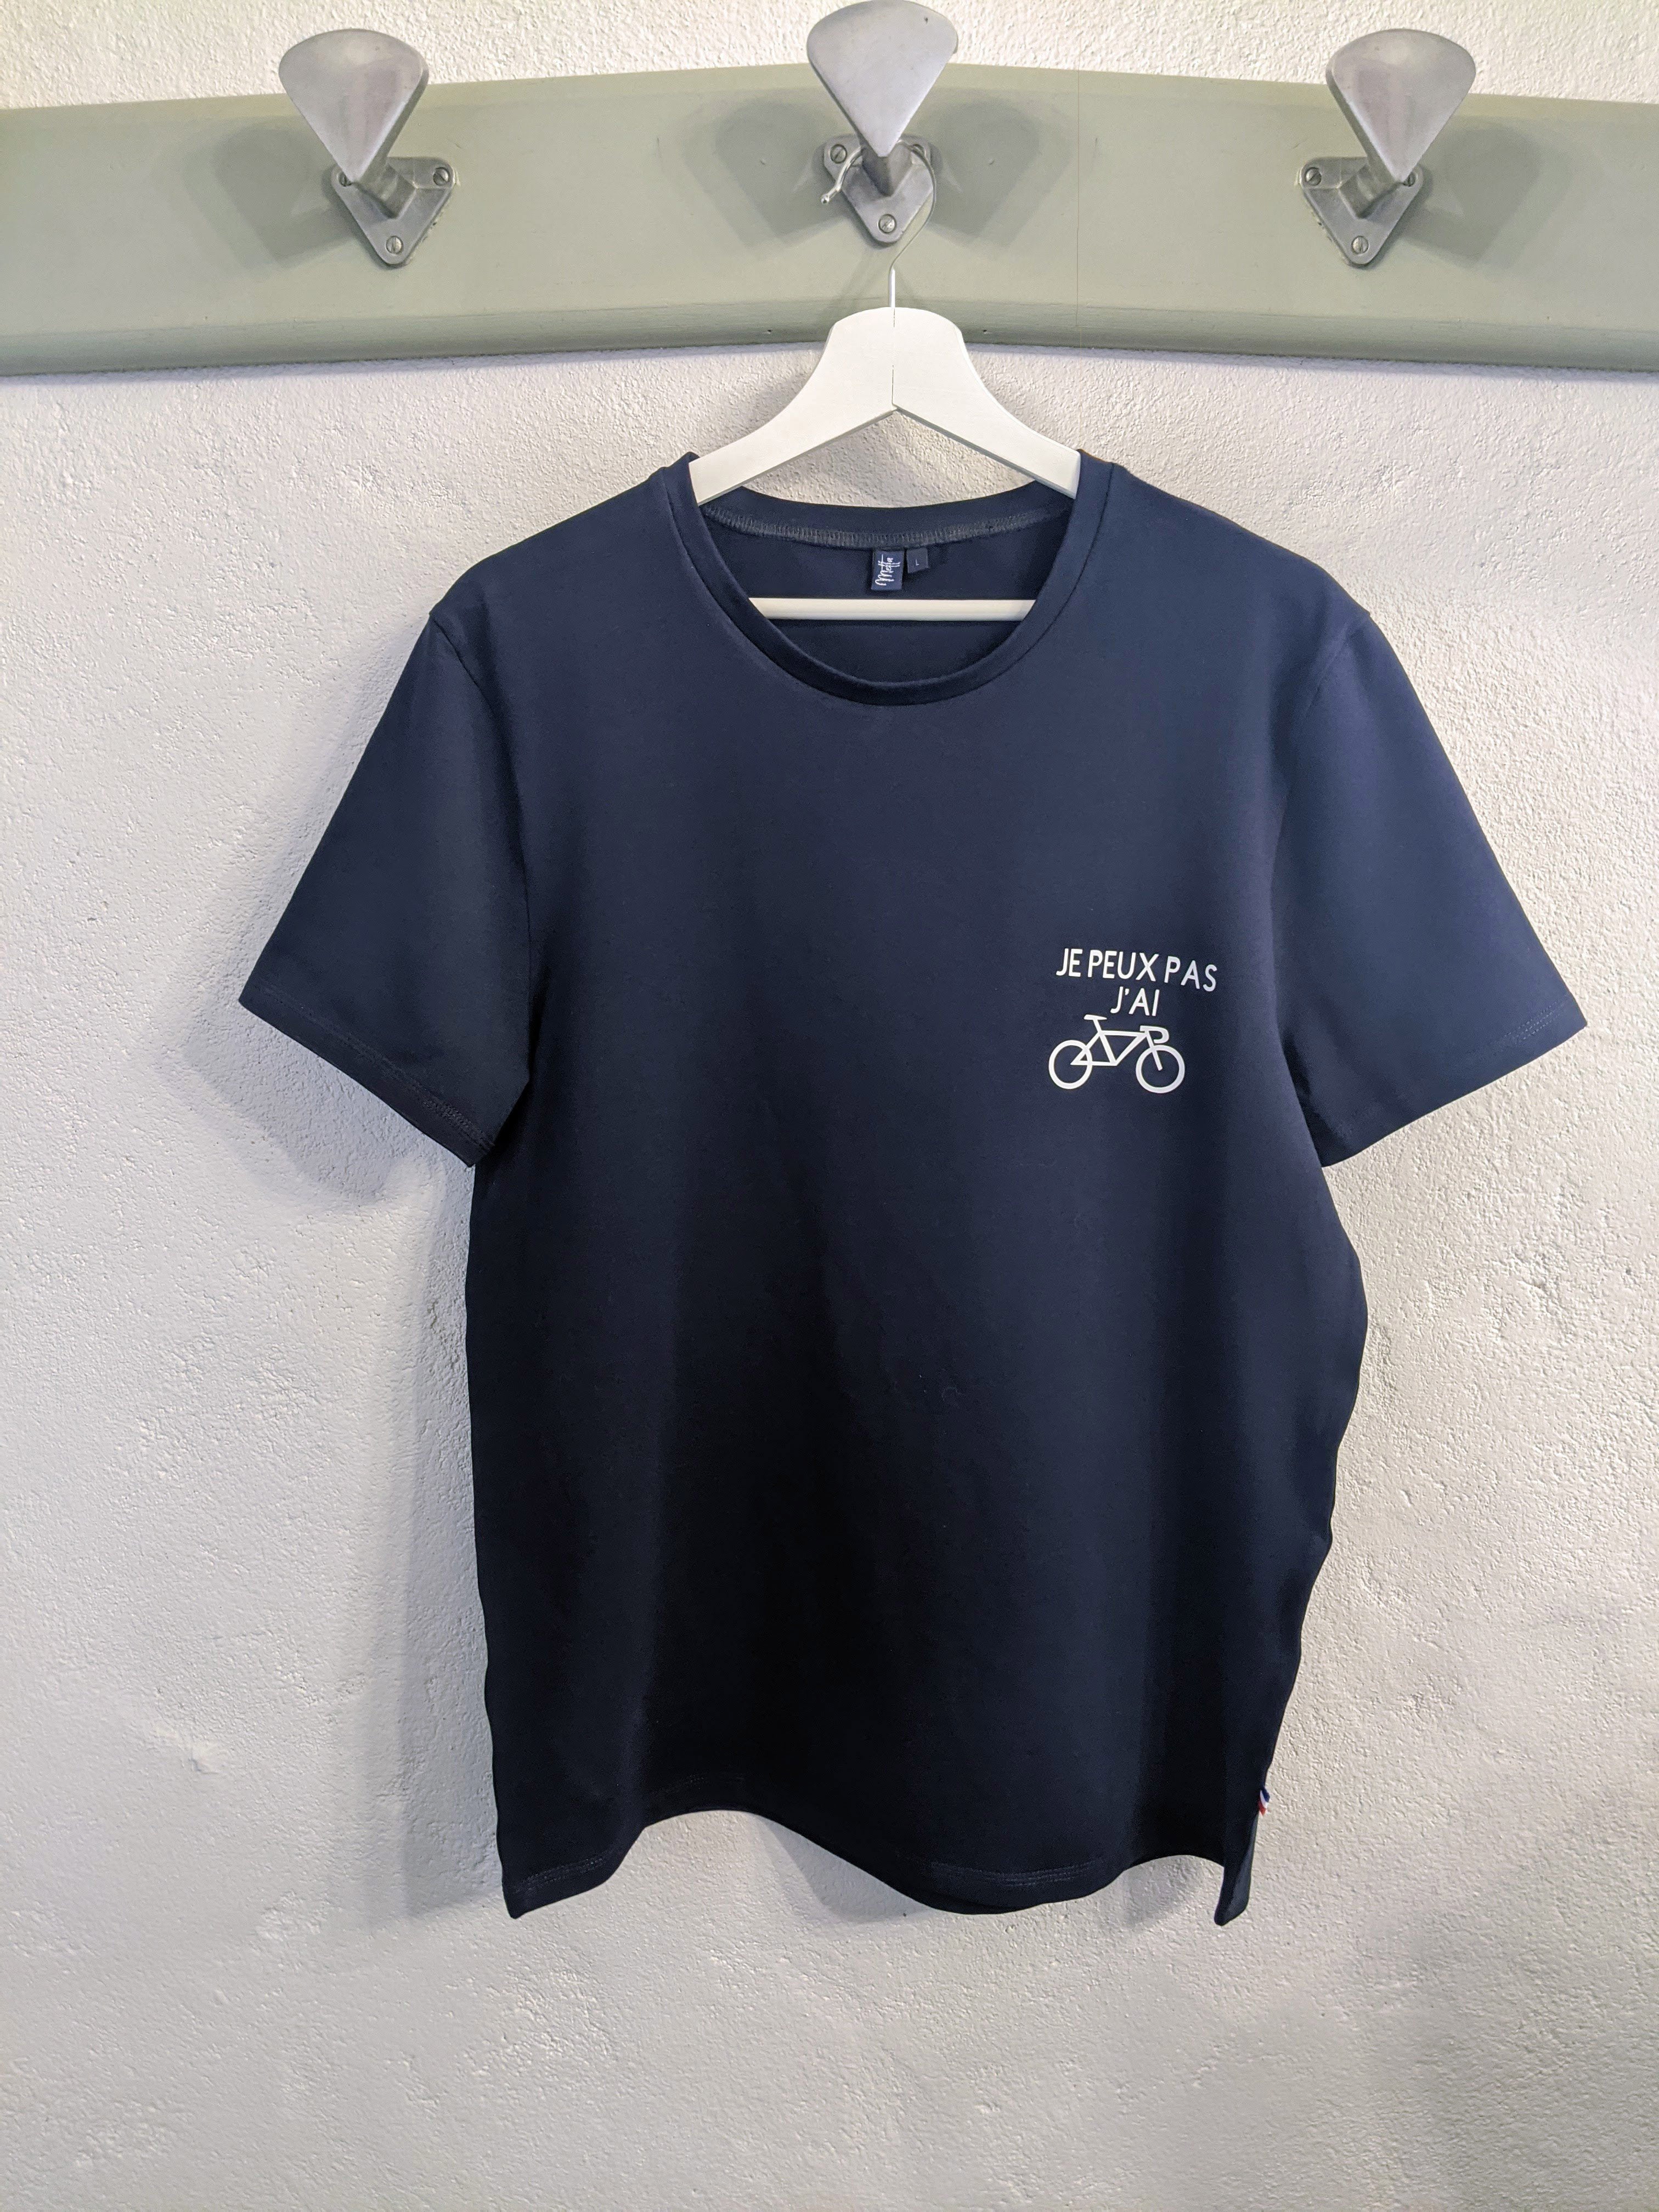 Exemple de personnalisation sur t-shirt bleu marine le gaminet de l'atelier Metta.